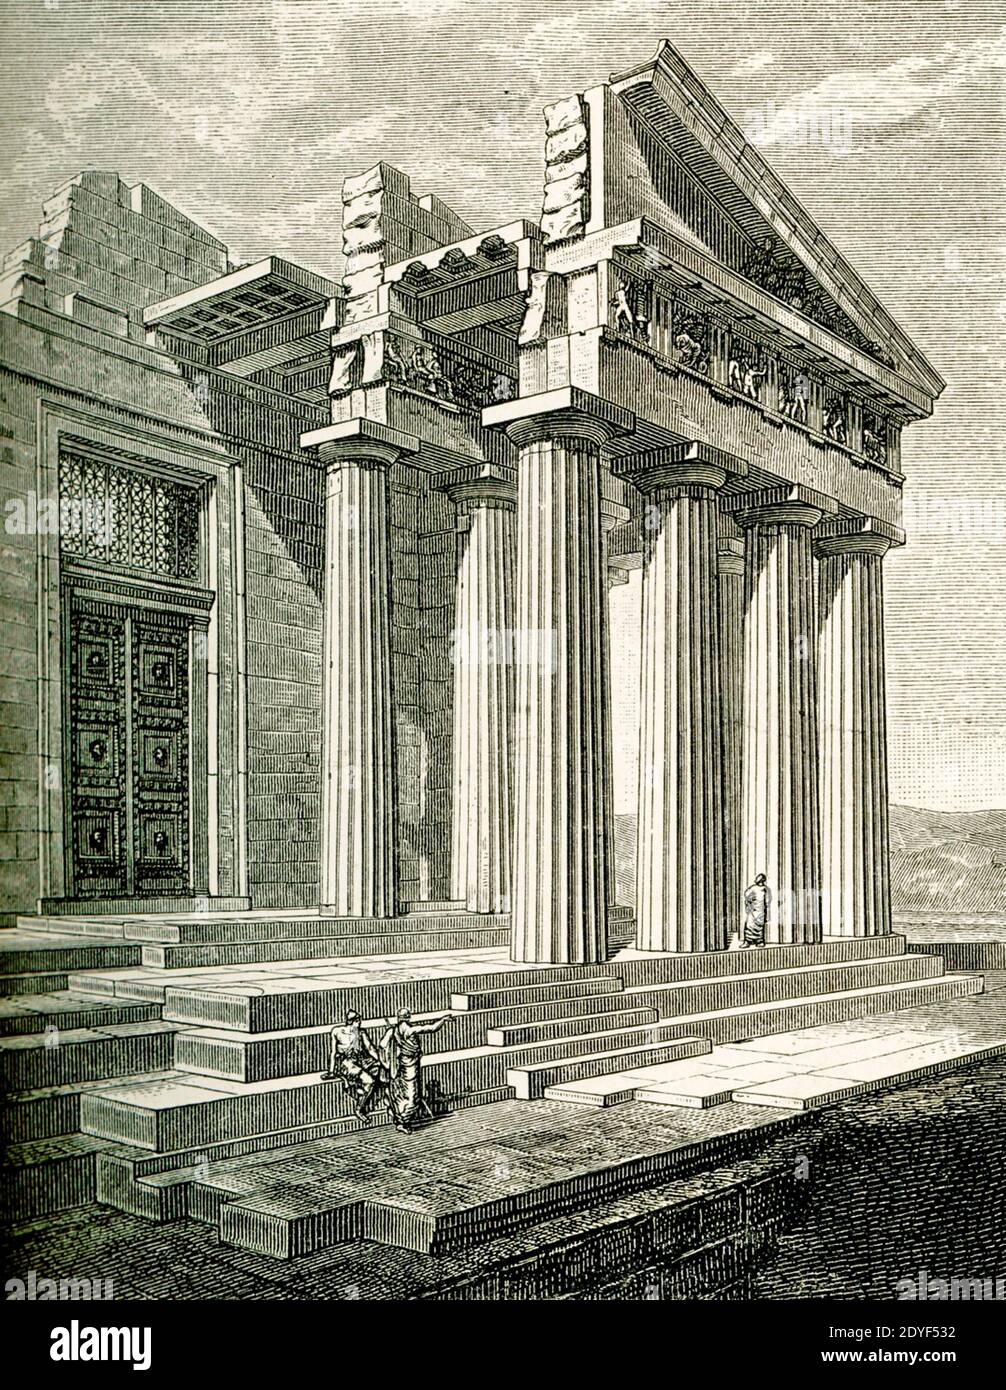 Vue en coupe de l'extrémité est du Parthénon après Niemann. Coin nord-est du Parthénon reconstruit par G Niemann avec mais peu de restauration à partir de vestiges existants. Sur le devant du toit, l'espace triangulaire ouvert (le fronton() était rempli des sculptures portées par Lord Elgin en Angleterre et maintenant au British Museum. Pour les Grecs anciens, le Parthénon servait de temple à la déesse Athéna. Achevé en 432 av. J.-C., il se trouvait sur l'Acropole d'Athènes. À l'intérieur, à l'extrémité ouest de la nef, se trouvait une statue d'Athena Parthenos de 40 pieds de haut (Parthenos signifie « ai Banque D'Images